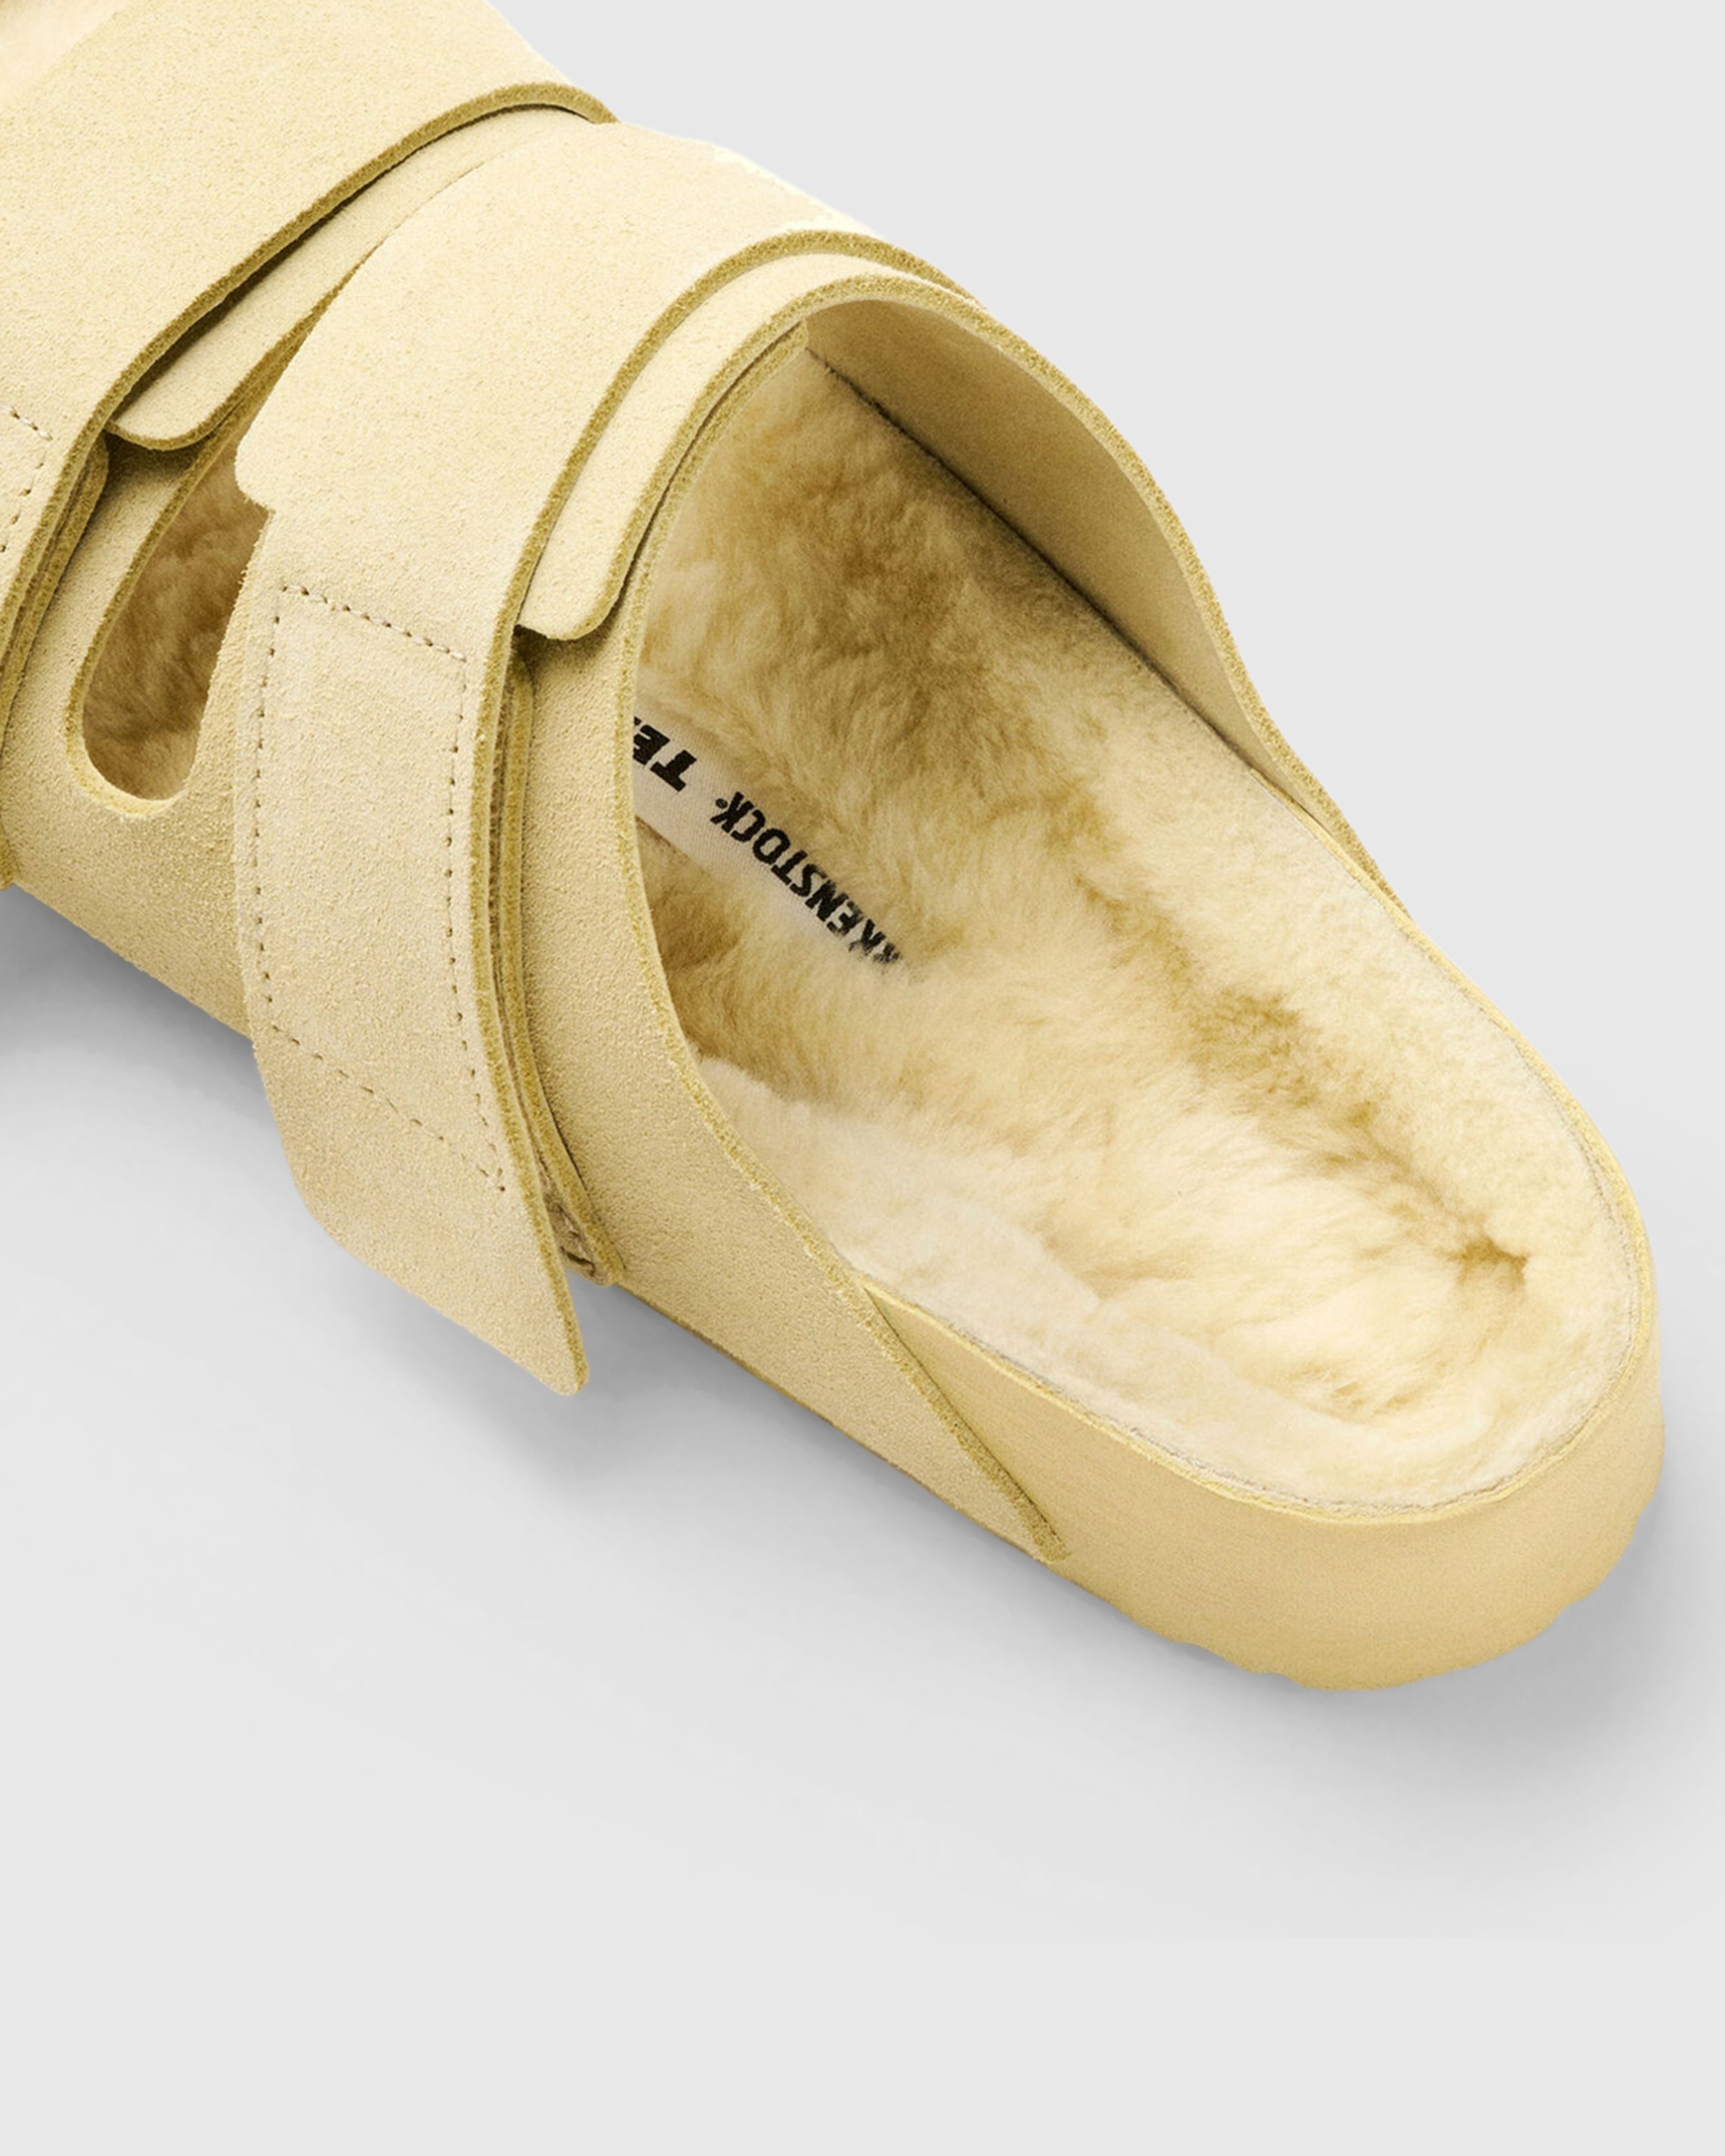 Birkenstock x Tekla - Shearling Uji Straw/Pale Yellow - Footwear - Yellow - Image 4